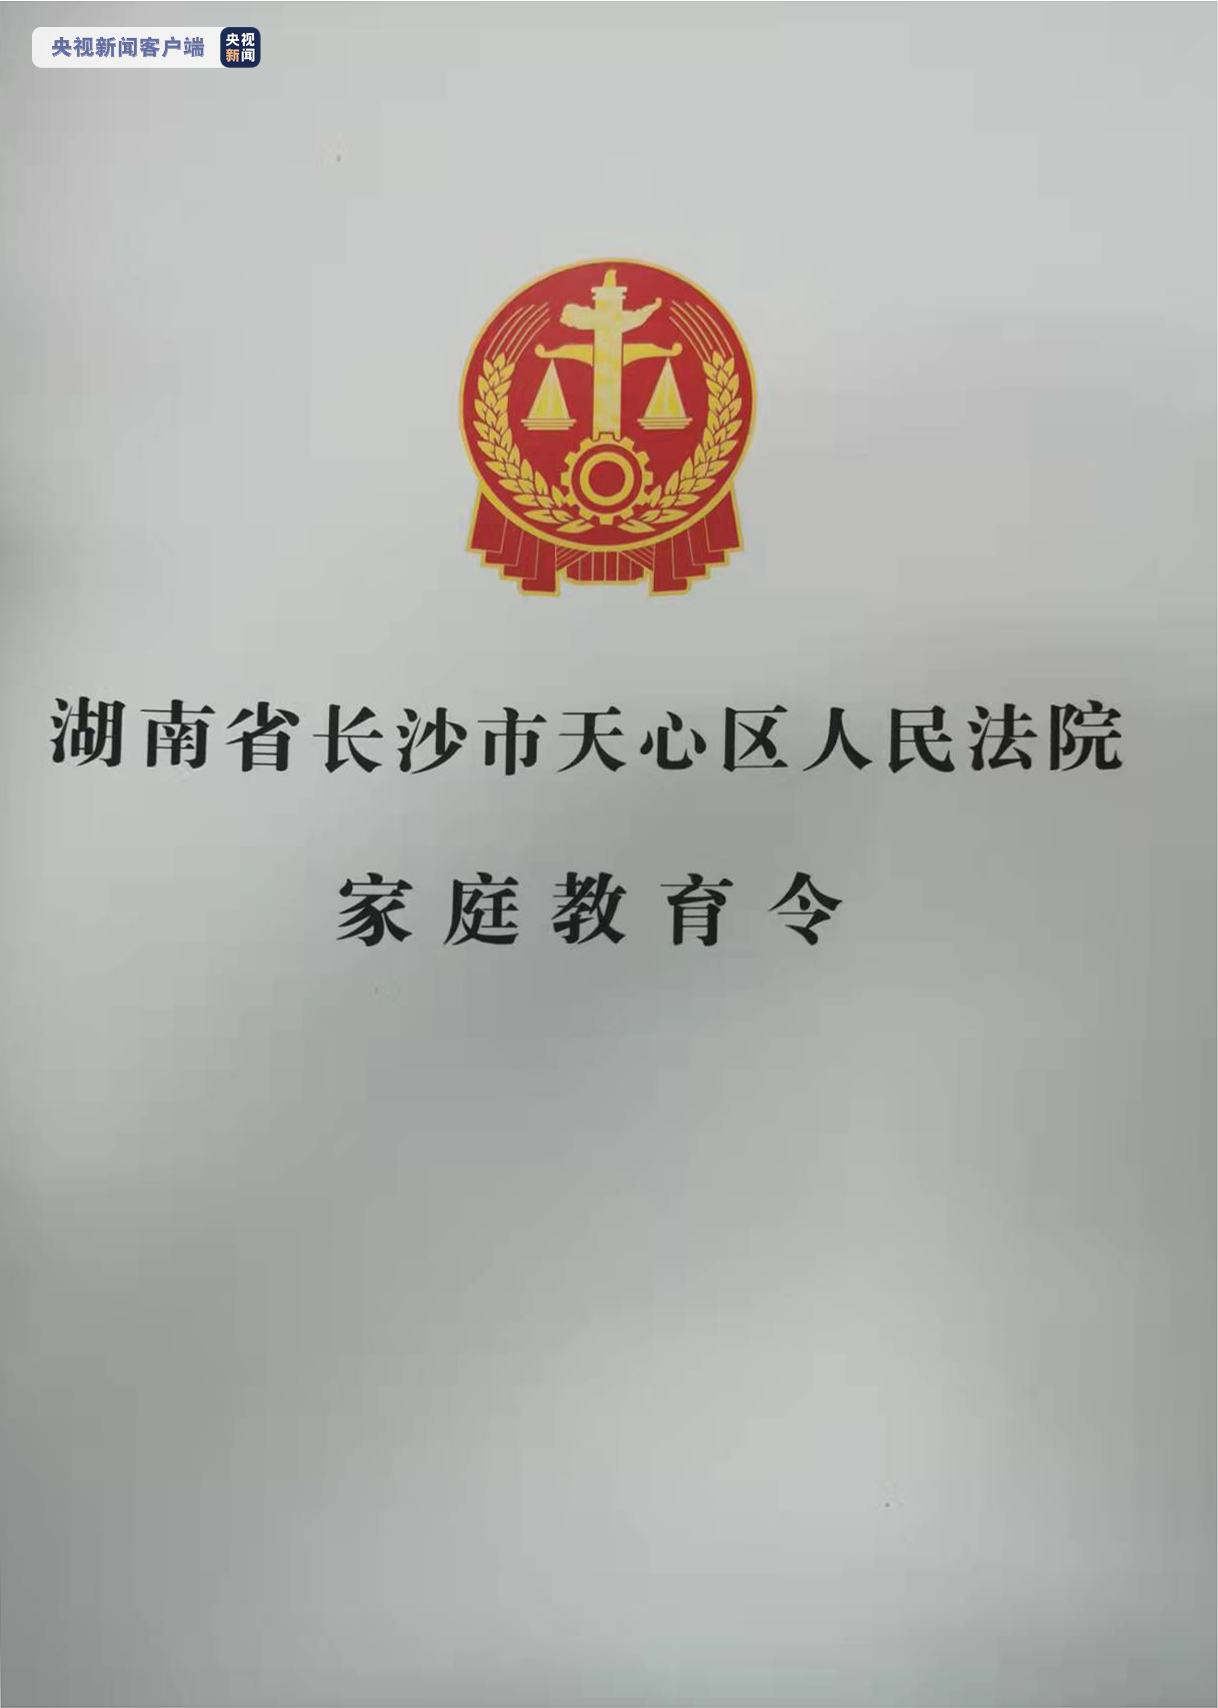 全国首份《家庭教育令》在湖南长沙发出